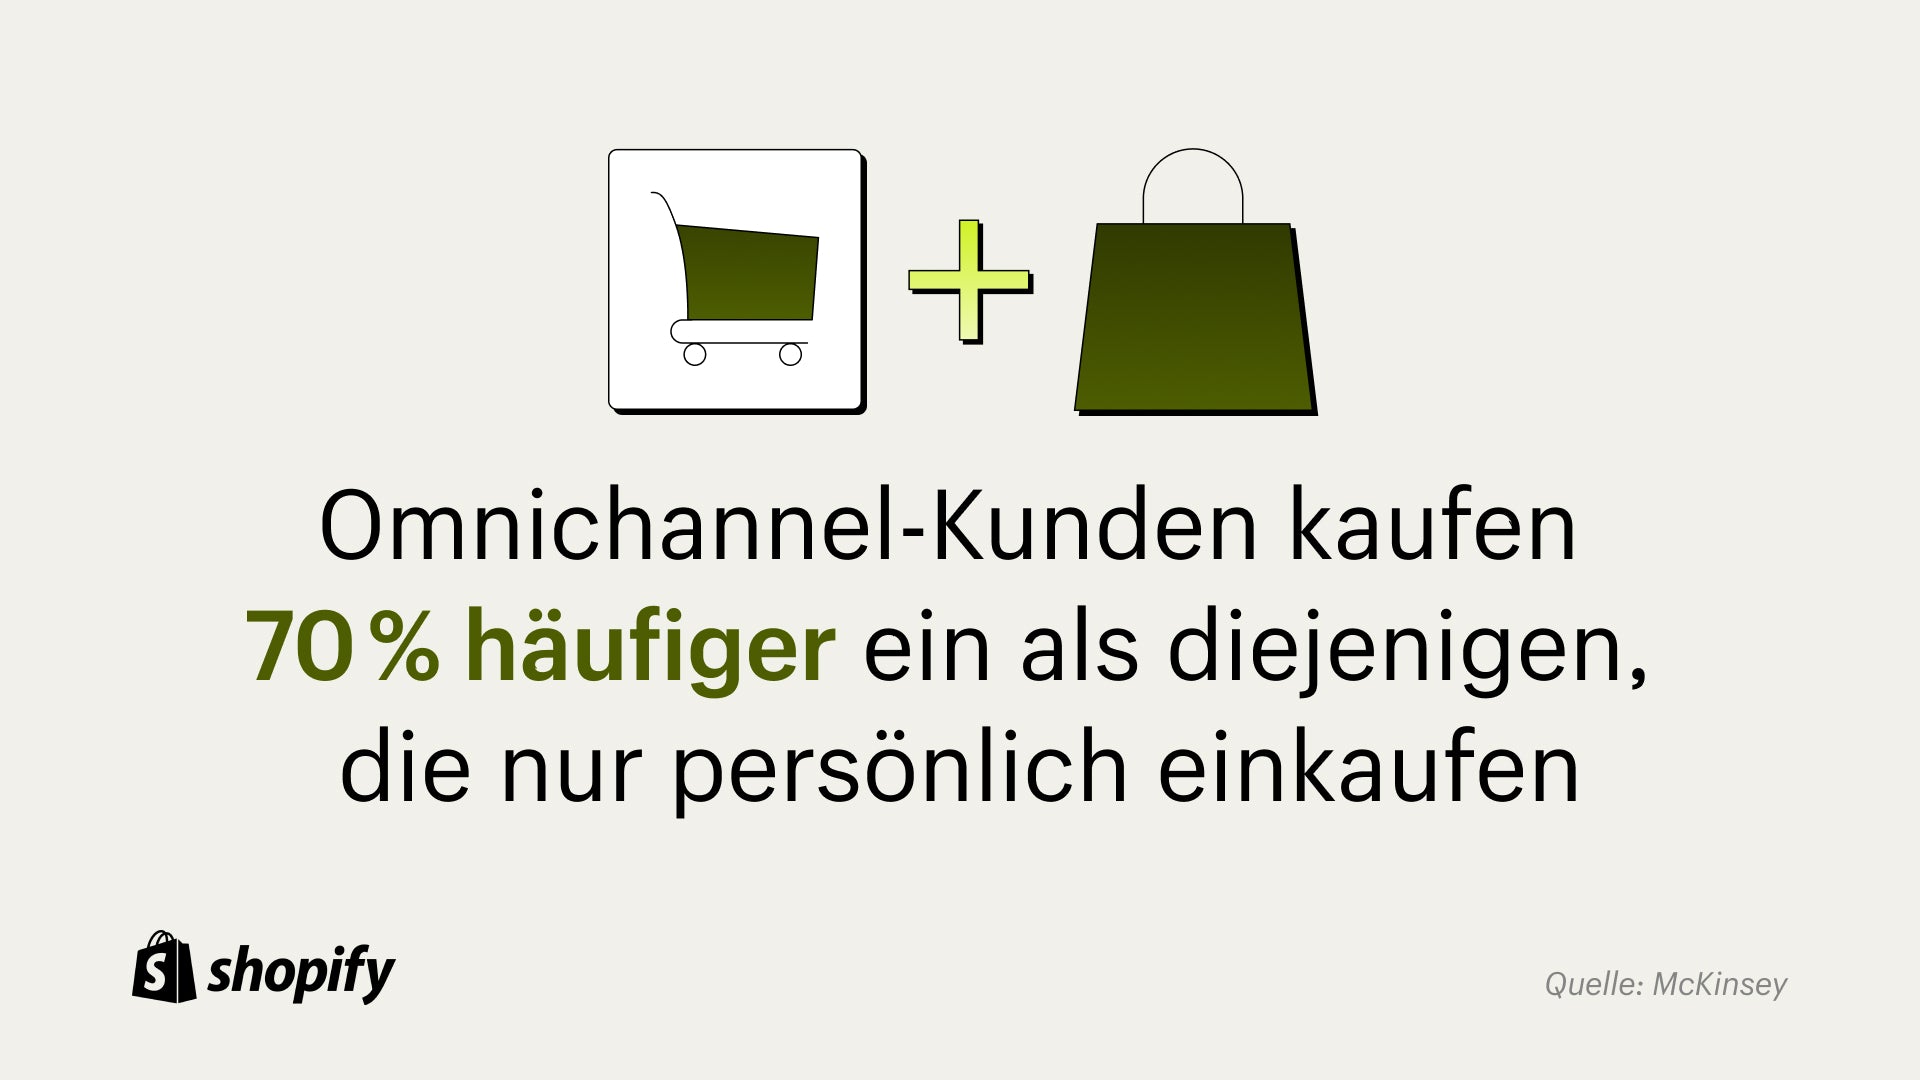 Cartoonbild eines grünen Einkaufswagens mit einem Pluszeichen daneben, dann einer cartoongrünen Einkaufstasche mit einer Tatsache darunter, die besagt: Omnichannel-Kunden kaufen 70 % häufiger ein als diejenigen, die nur persönlich einkaufen